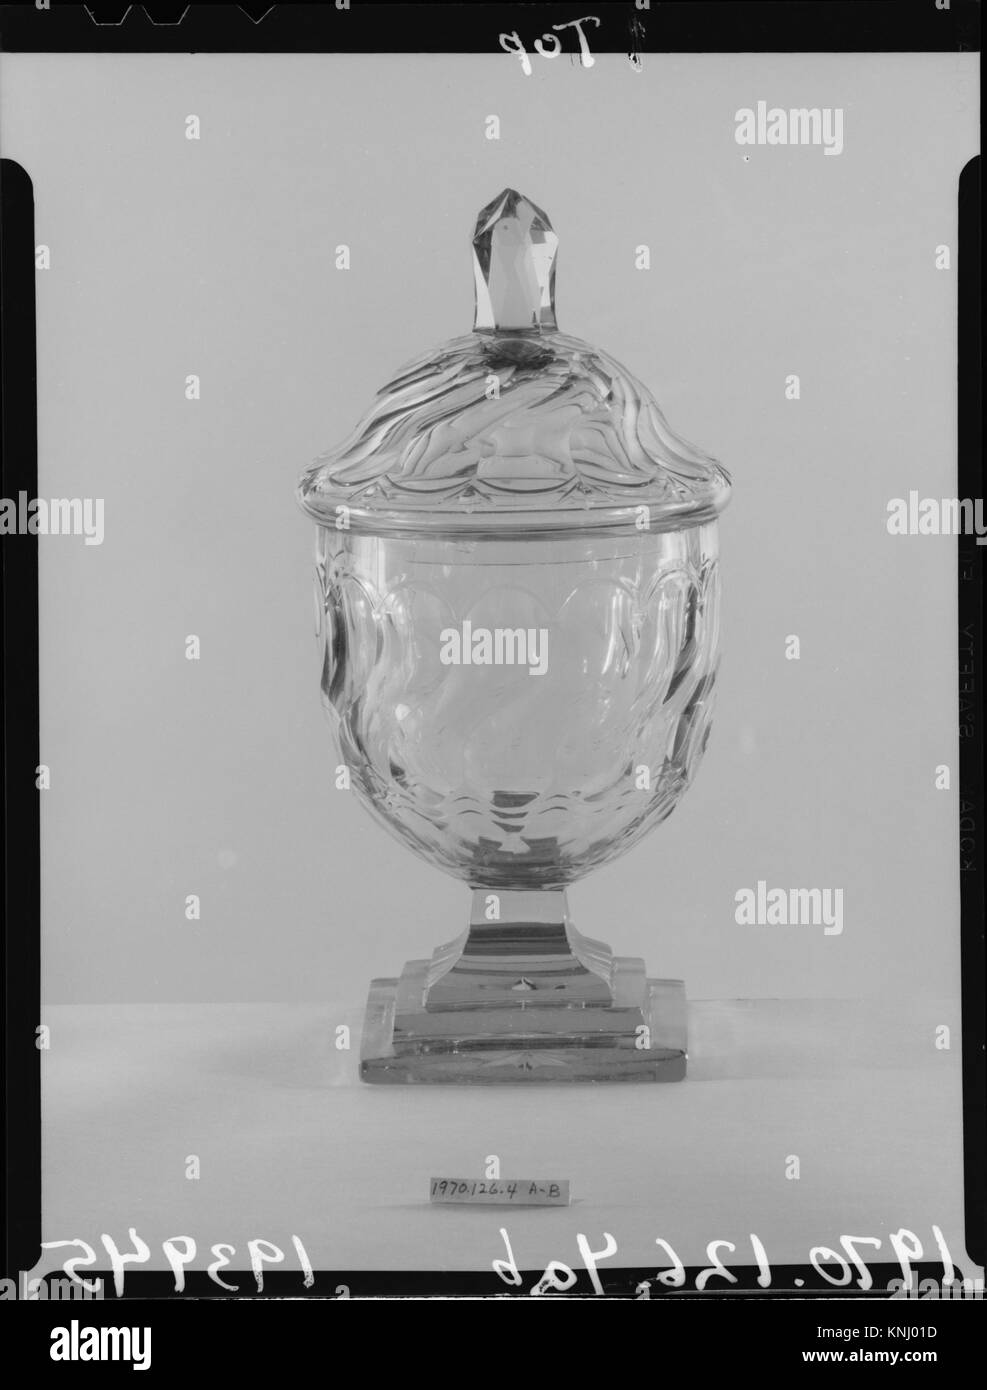 Überdachte Süßigkeit Jar MET 193945 2532 Irische, überdachte Süßigkeit Jar, 1775?1800, Glas, 11 3/8 x 5 7/8 in. (28,9 x 14,9 cm). Das Metropolitan Museum of Art, New York. Geschenk von Frau B. Langdon Tyler und Mrs William Floyd Nichols, 1970 (1970.126.4 a, b) Stockfoto